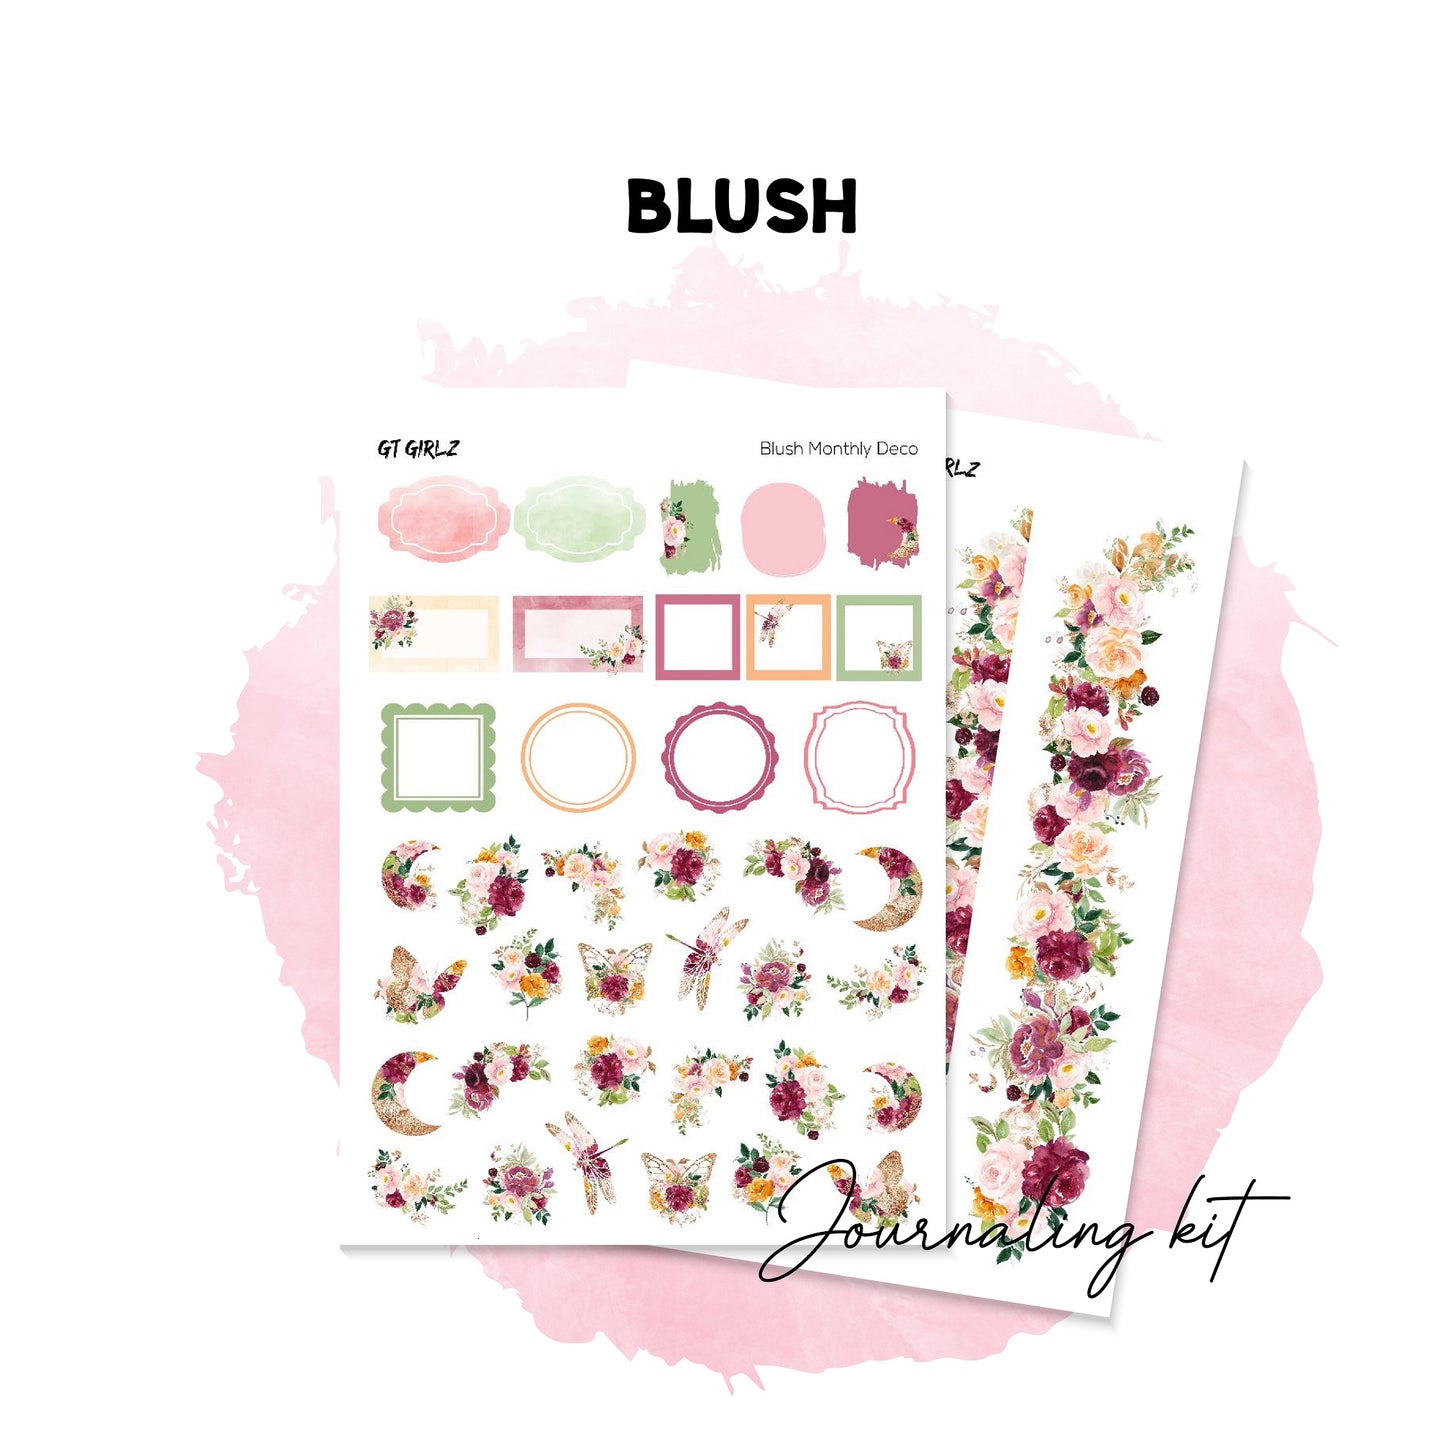 Blush Journaling Kit